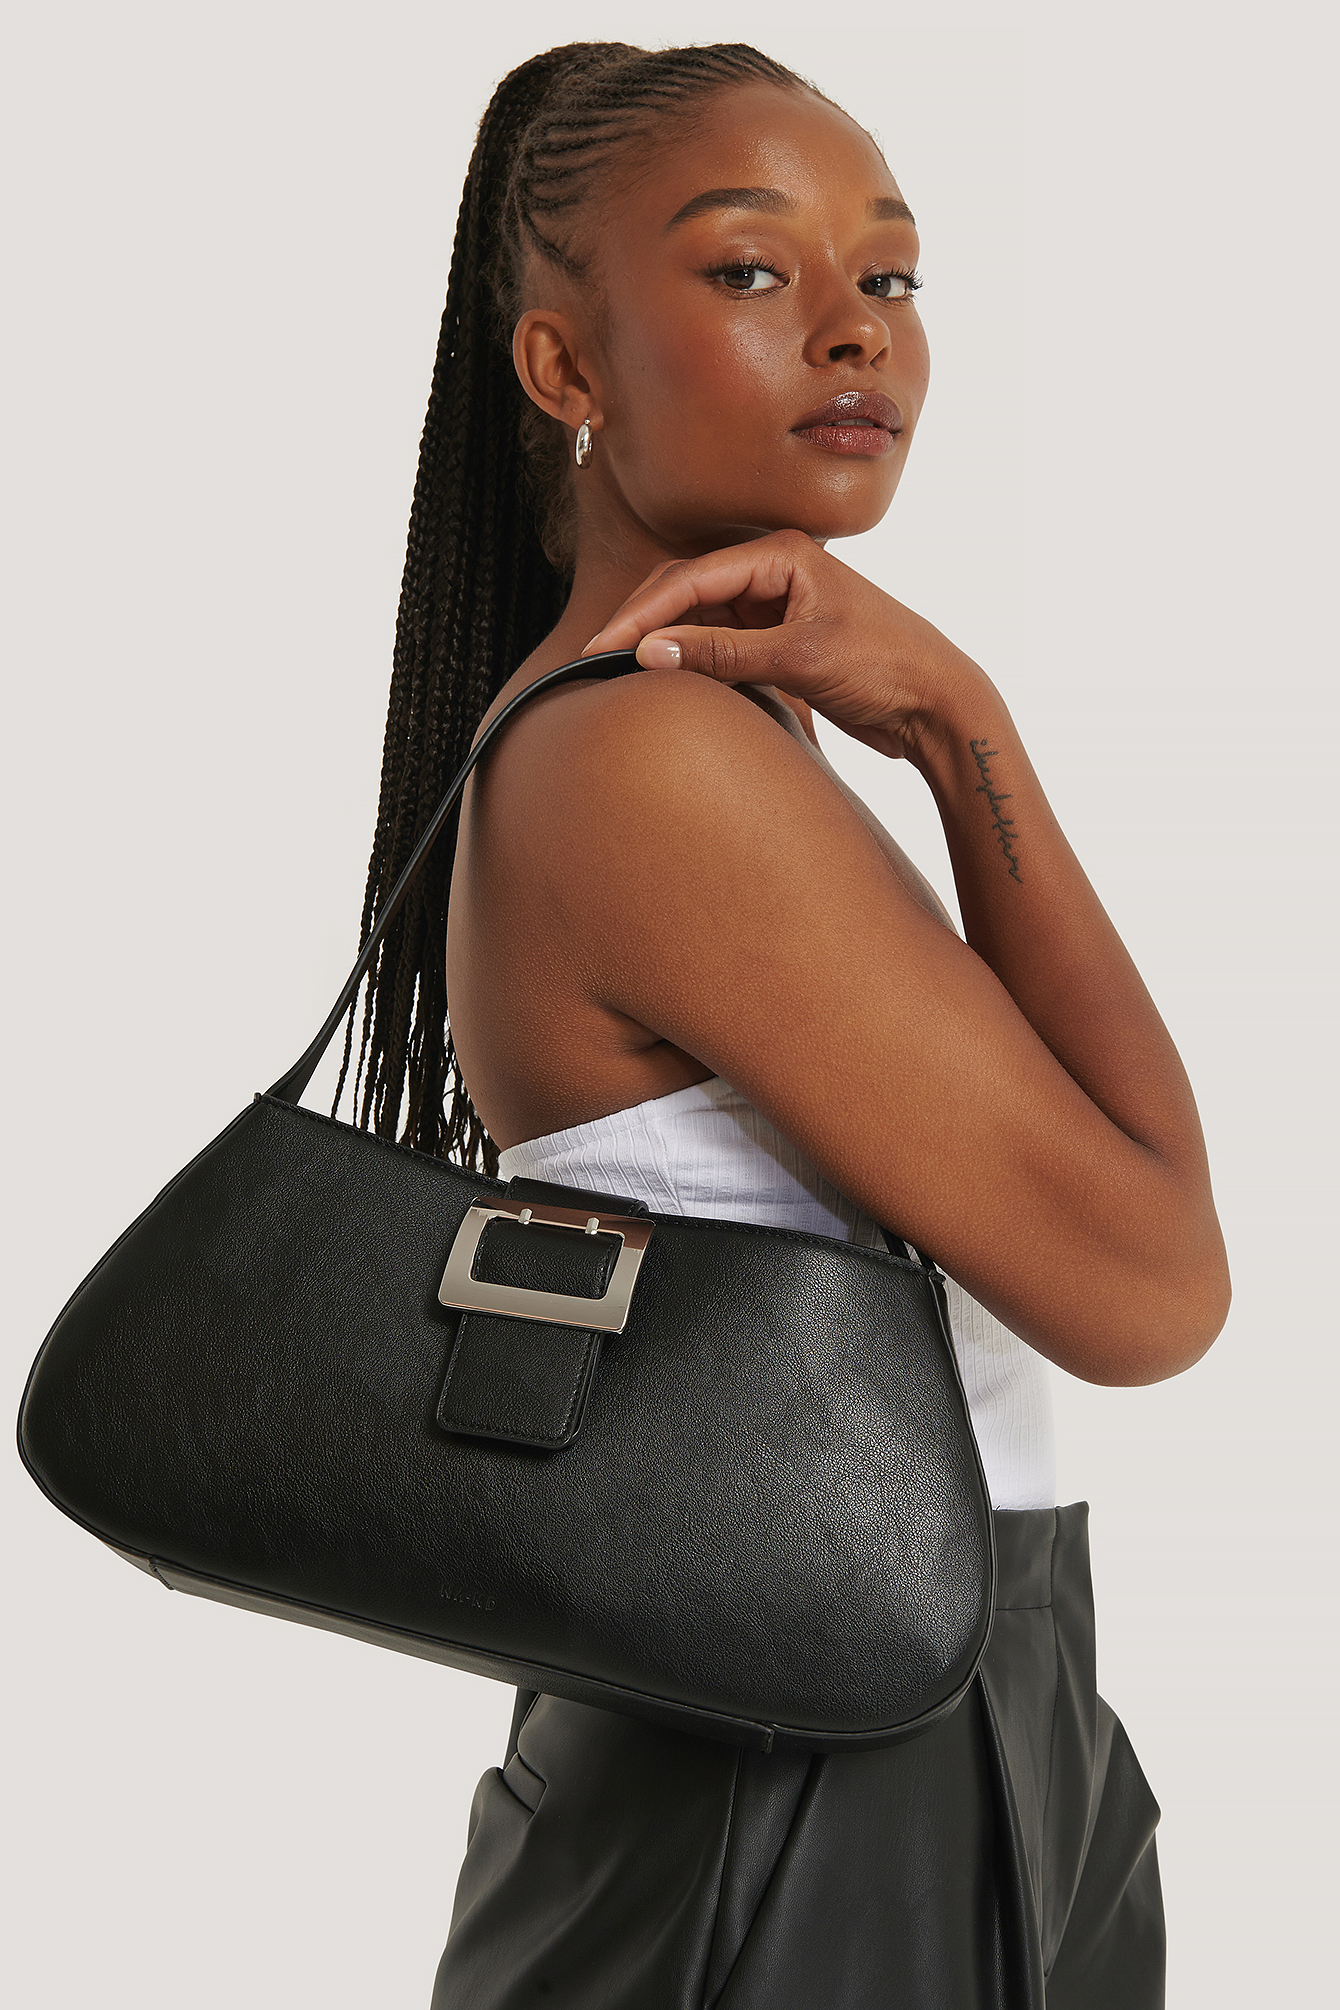 KNALLA Bag, black, white, Length: 15 ¾ Height: 18 ½. Find it